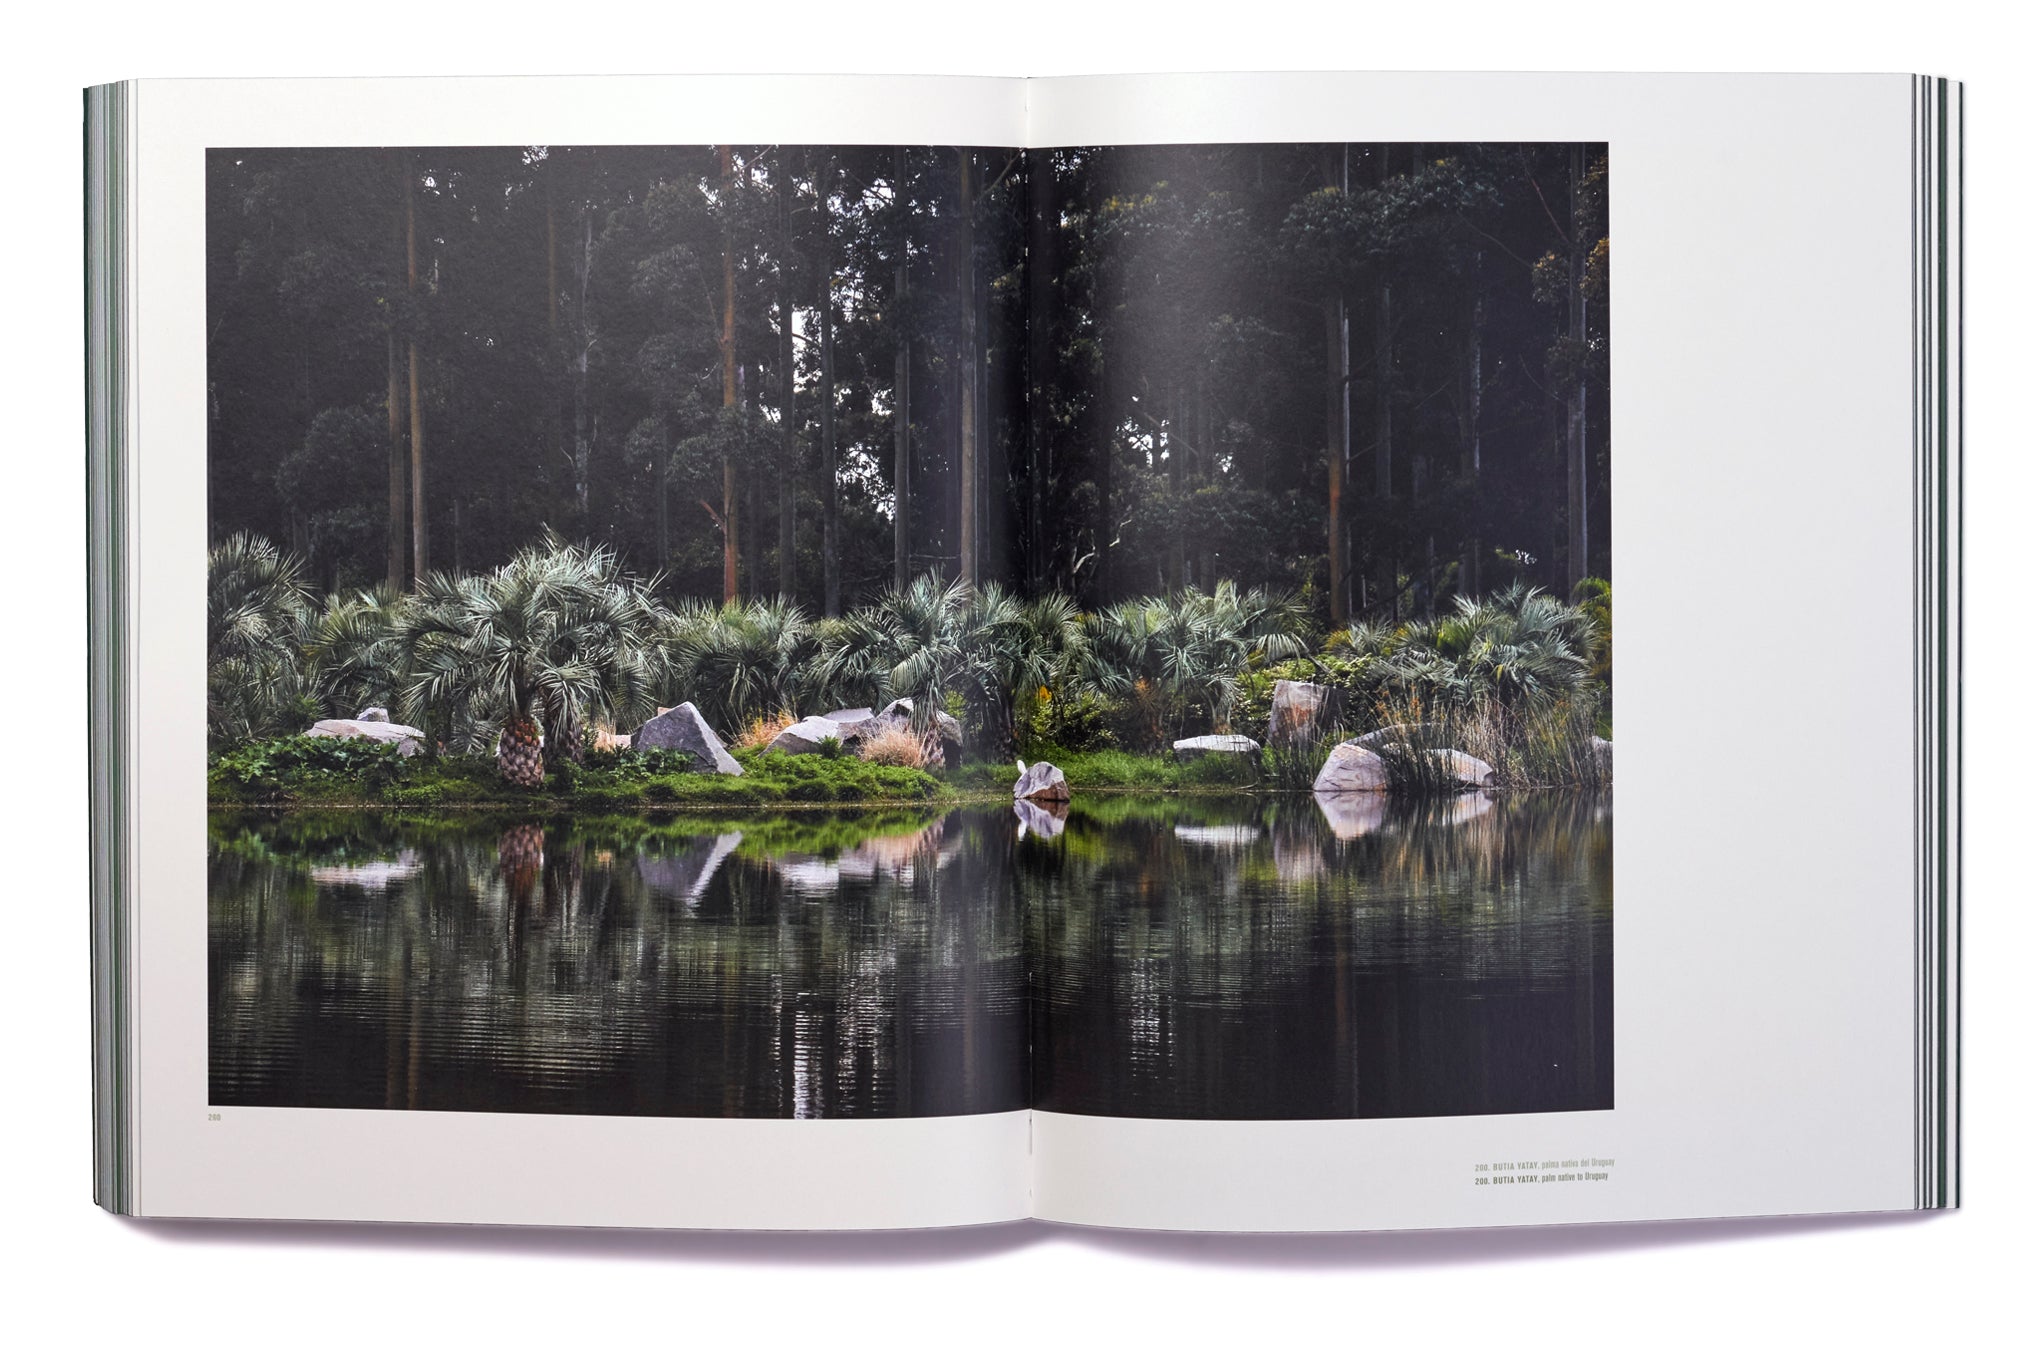 libro juan grimm paisajista Juan Grimm | Ediciones Puro Chile